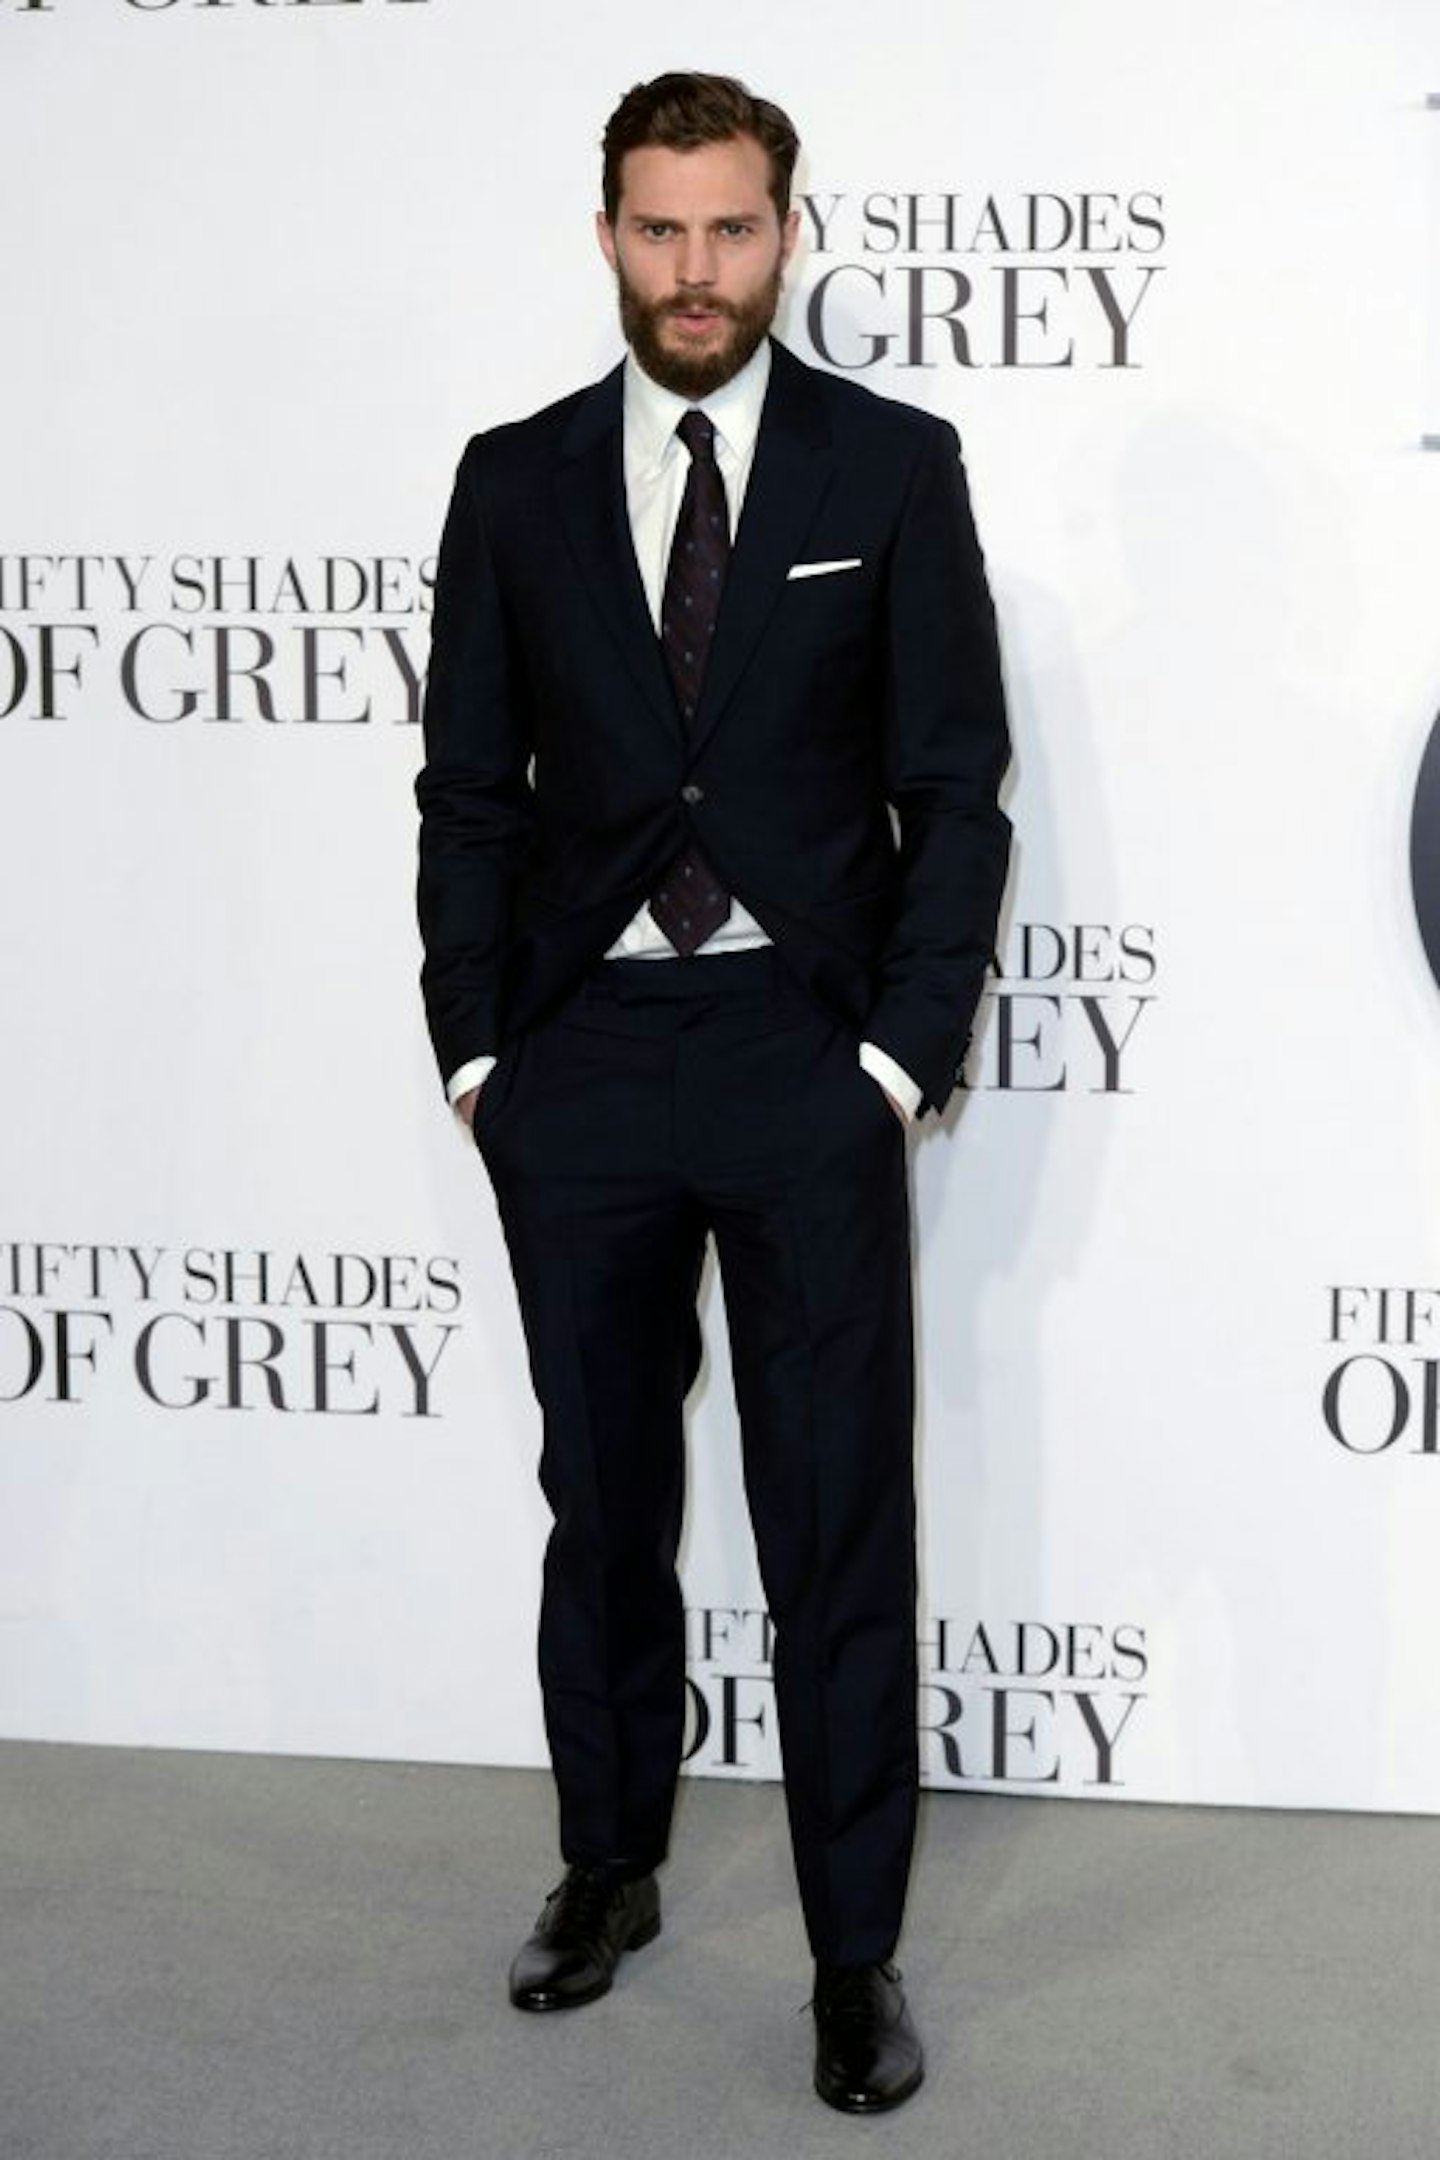 Jamie Dornan, actor (50 Shades of Grey)